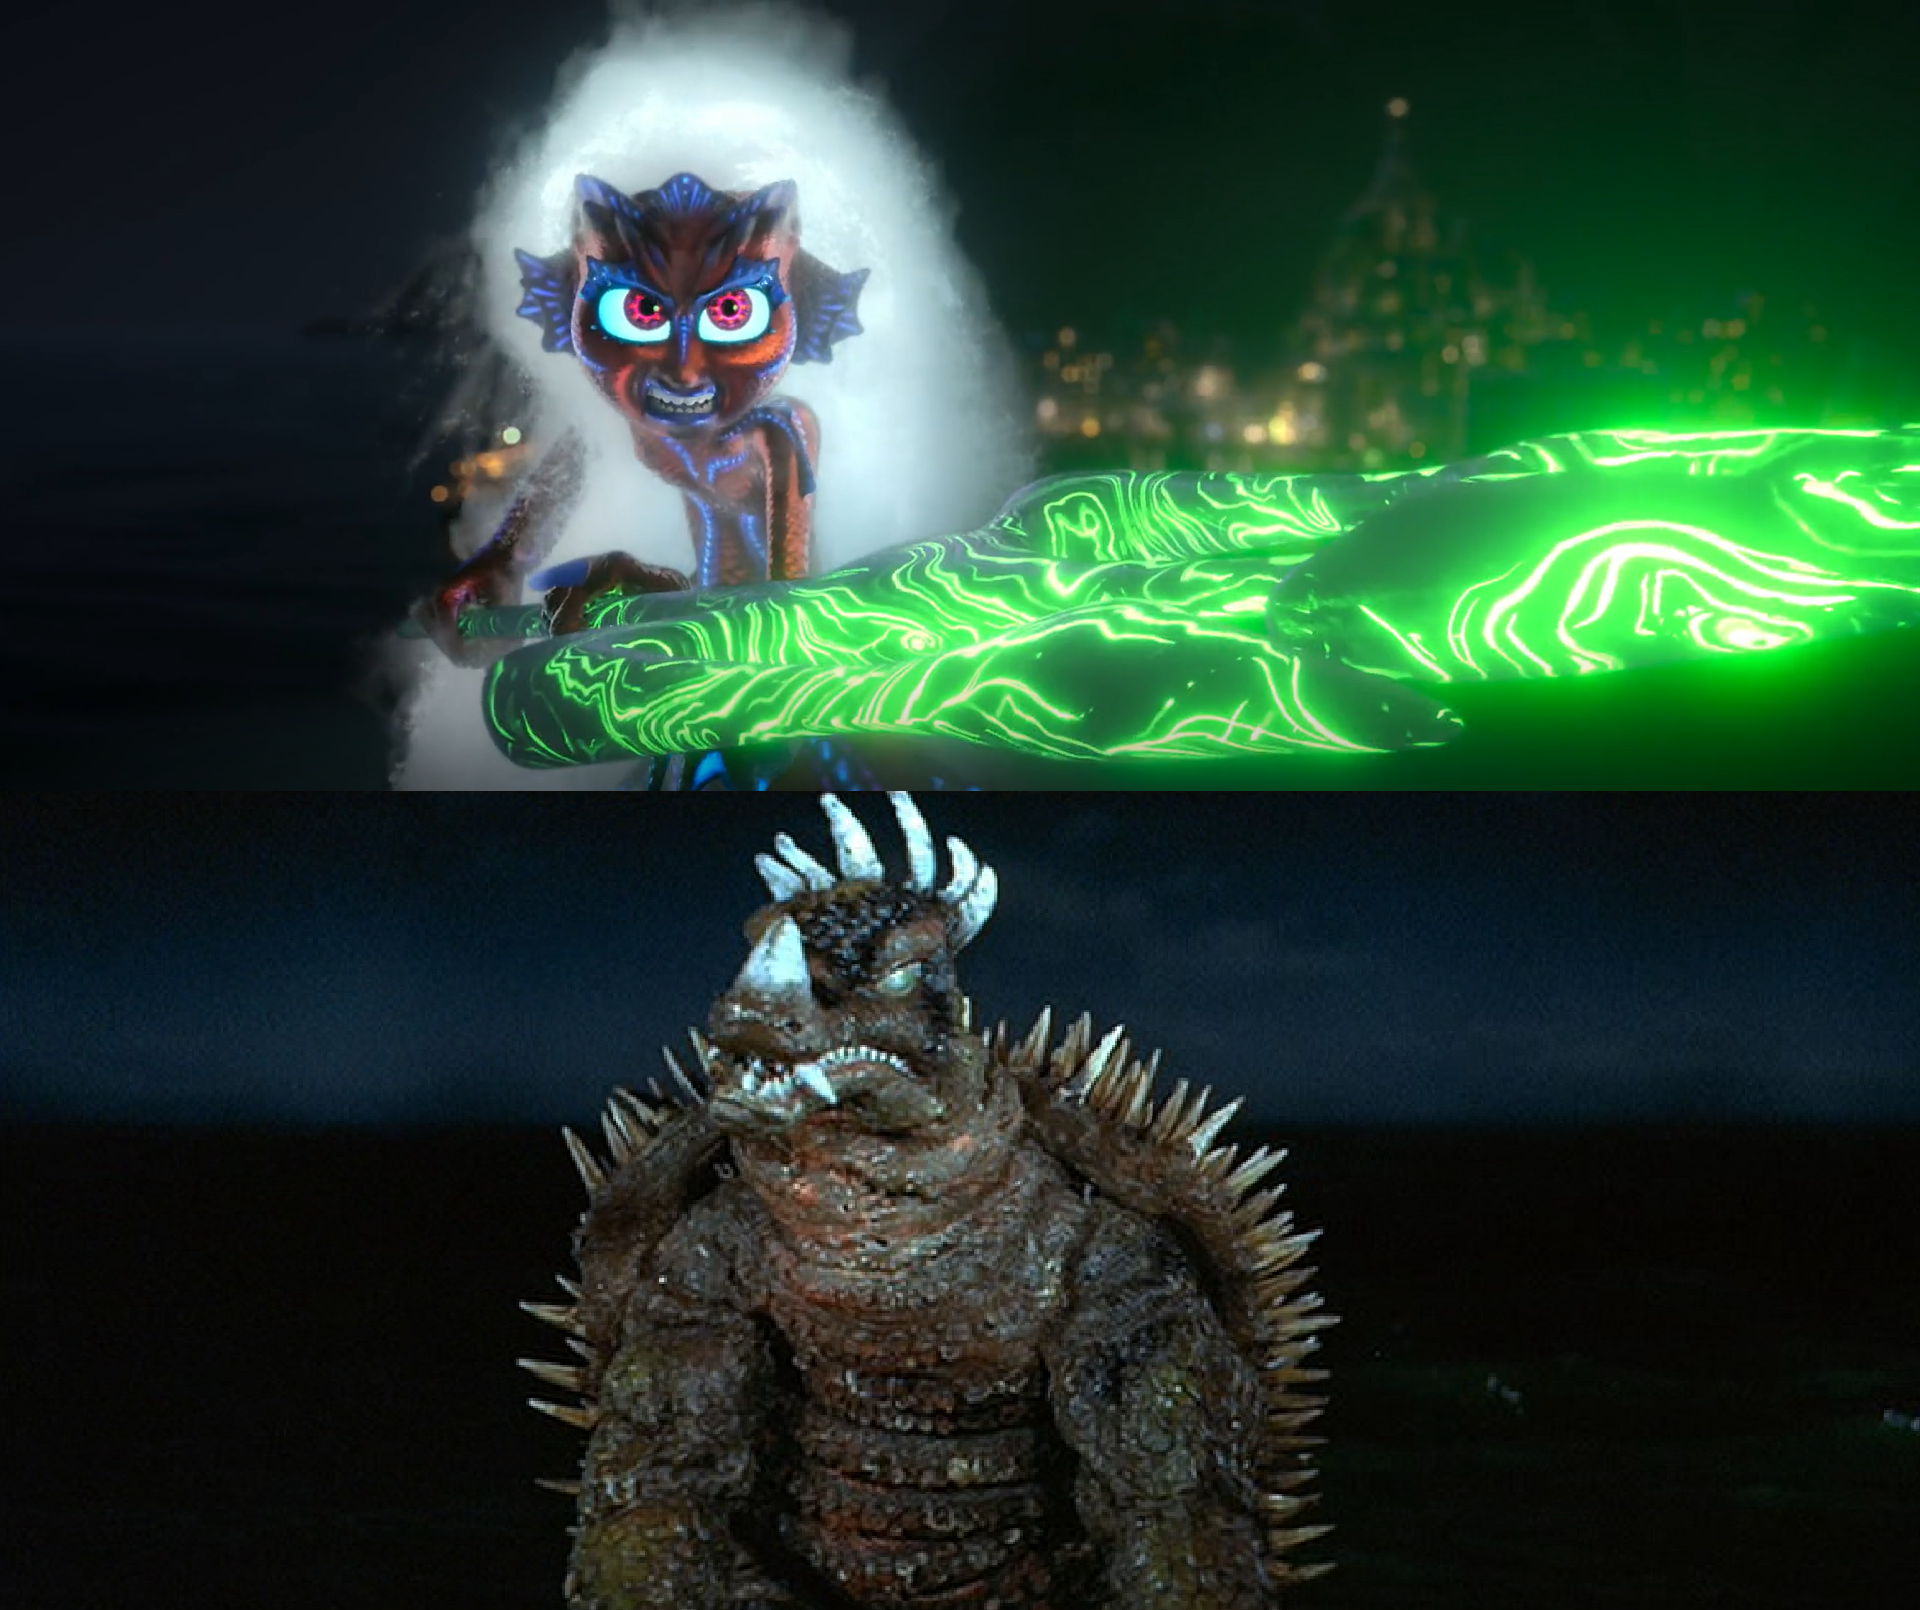 Godzilla Earth vs Jormungandr by MnstrFrc on DeviantArt